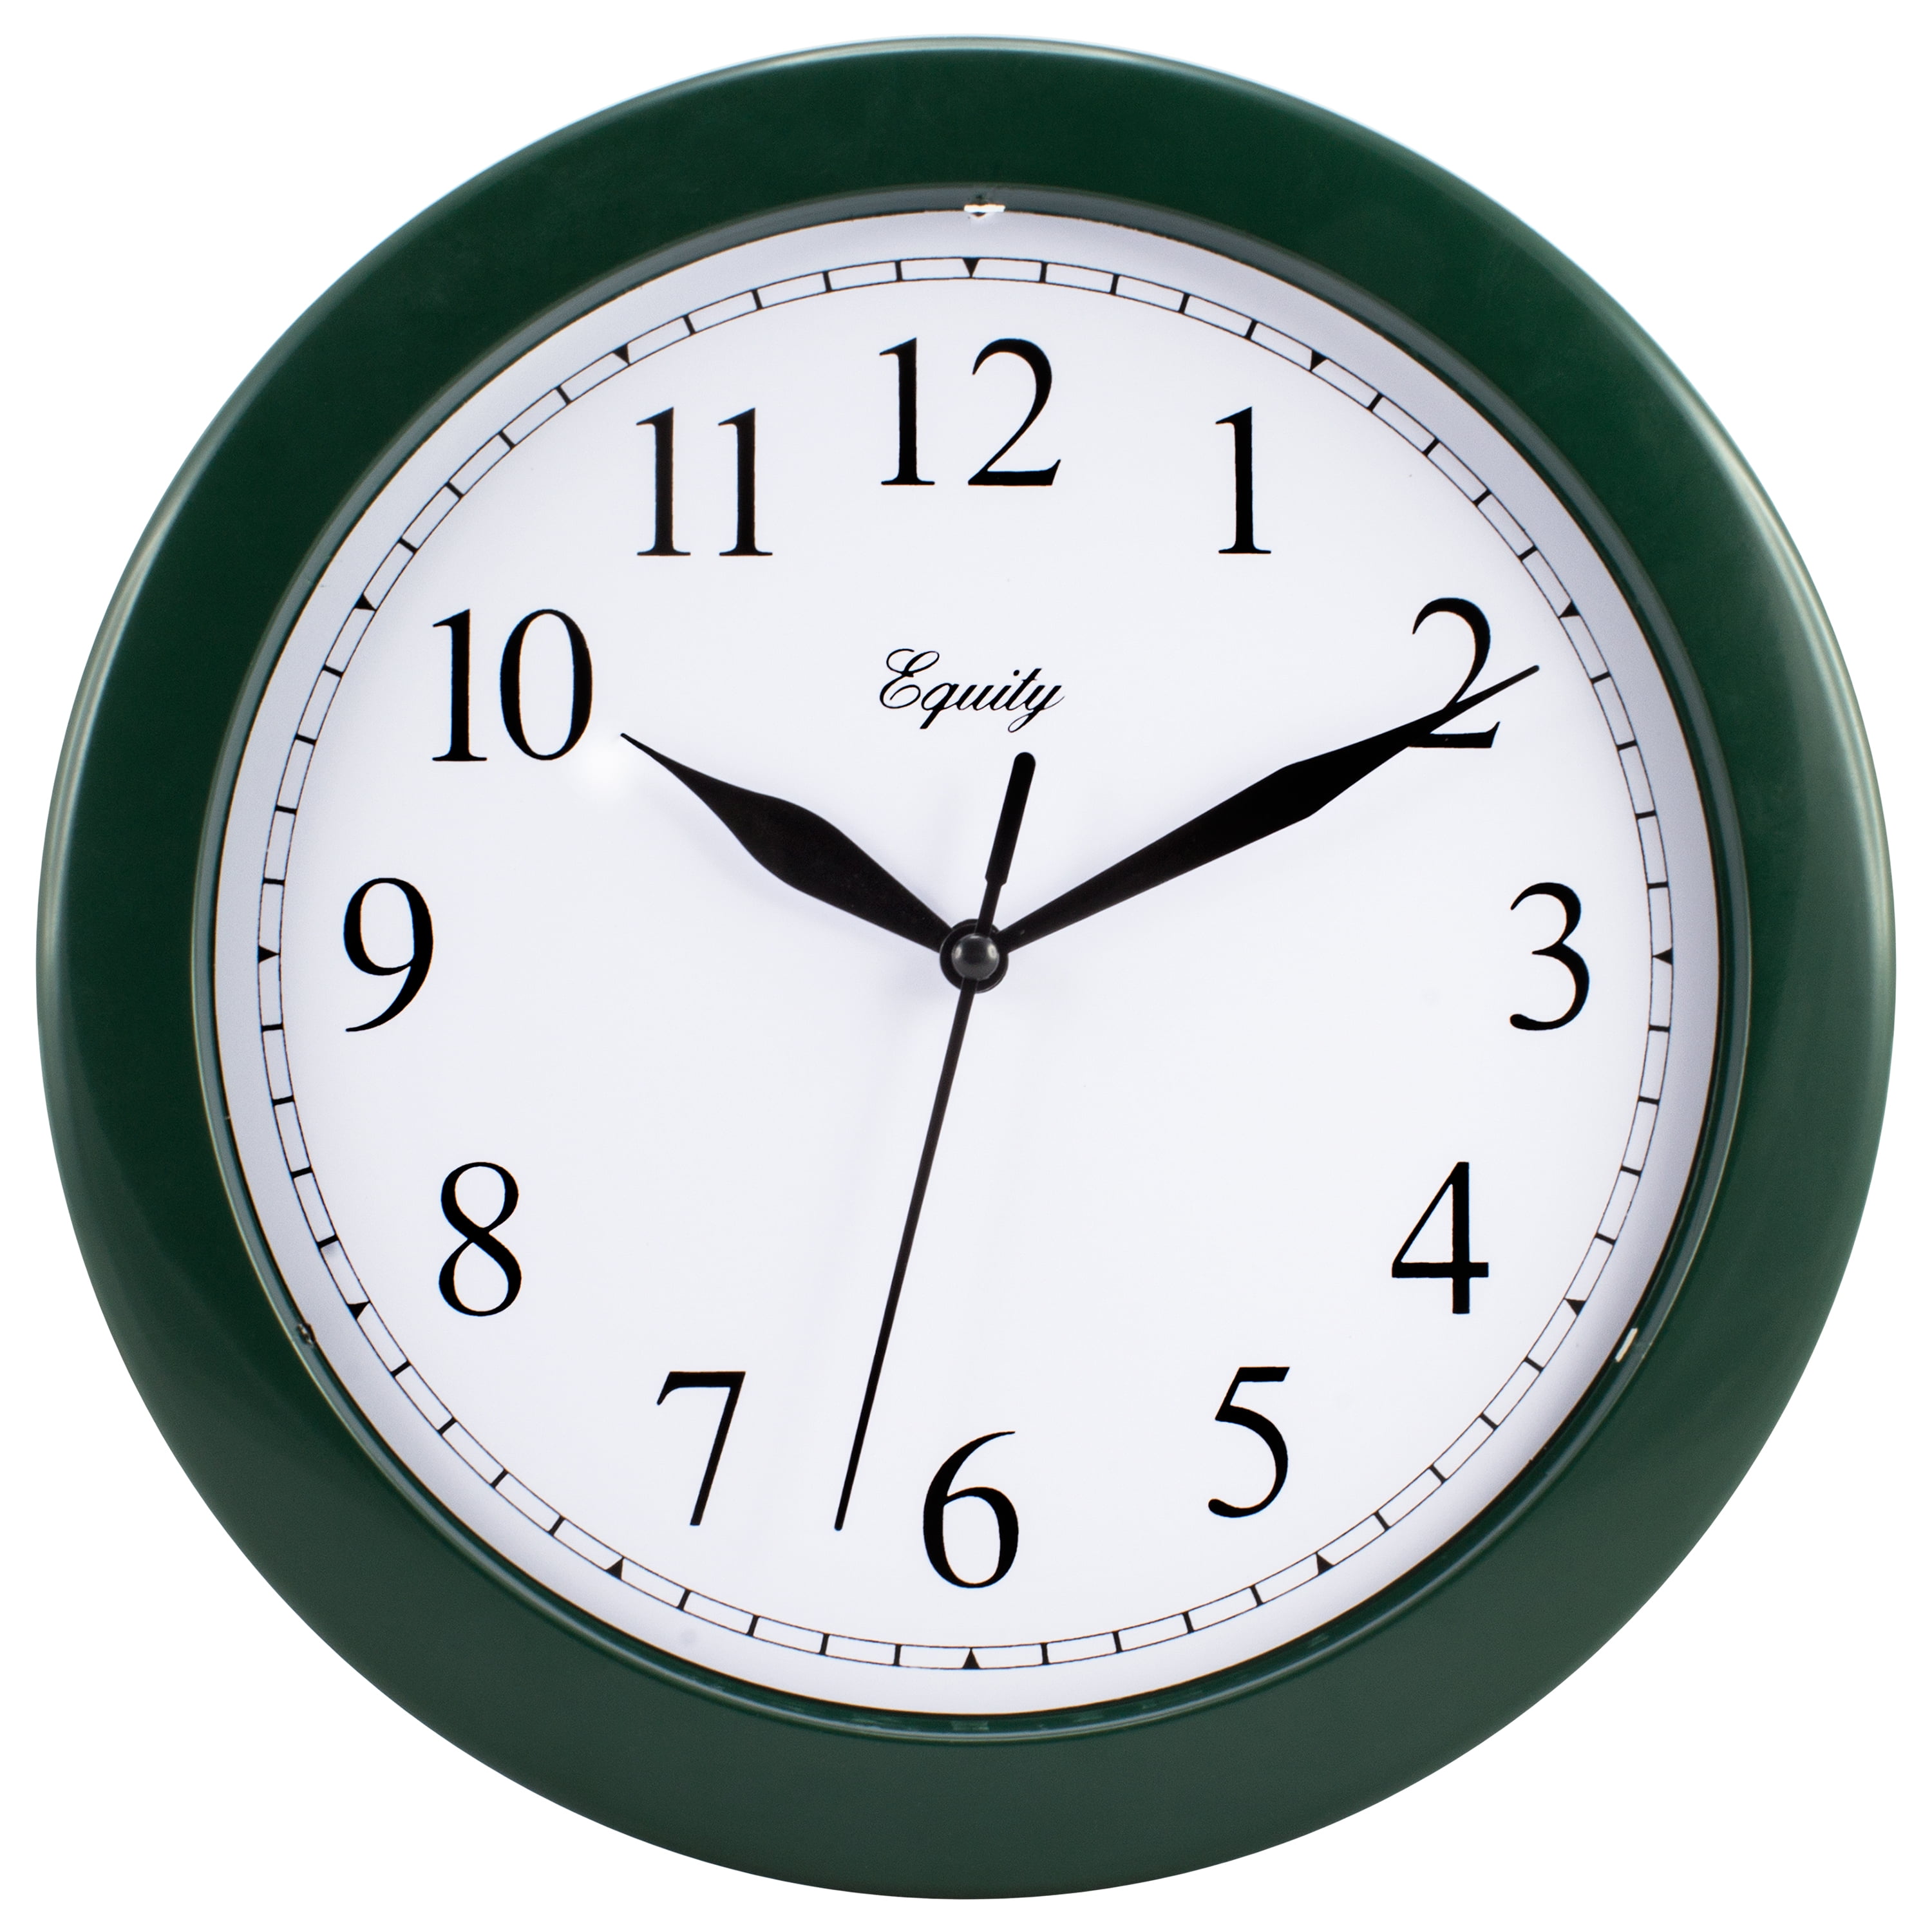 Часы в грине. Часы зеленые. Часы СКОВЕЛЬ зеленые. Настенные часы Ajanta Regulator. Часы 10см.